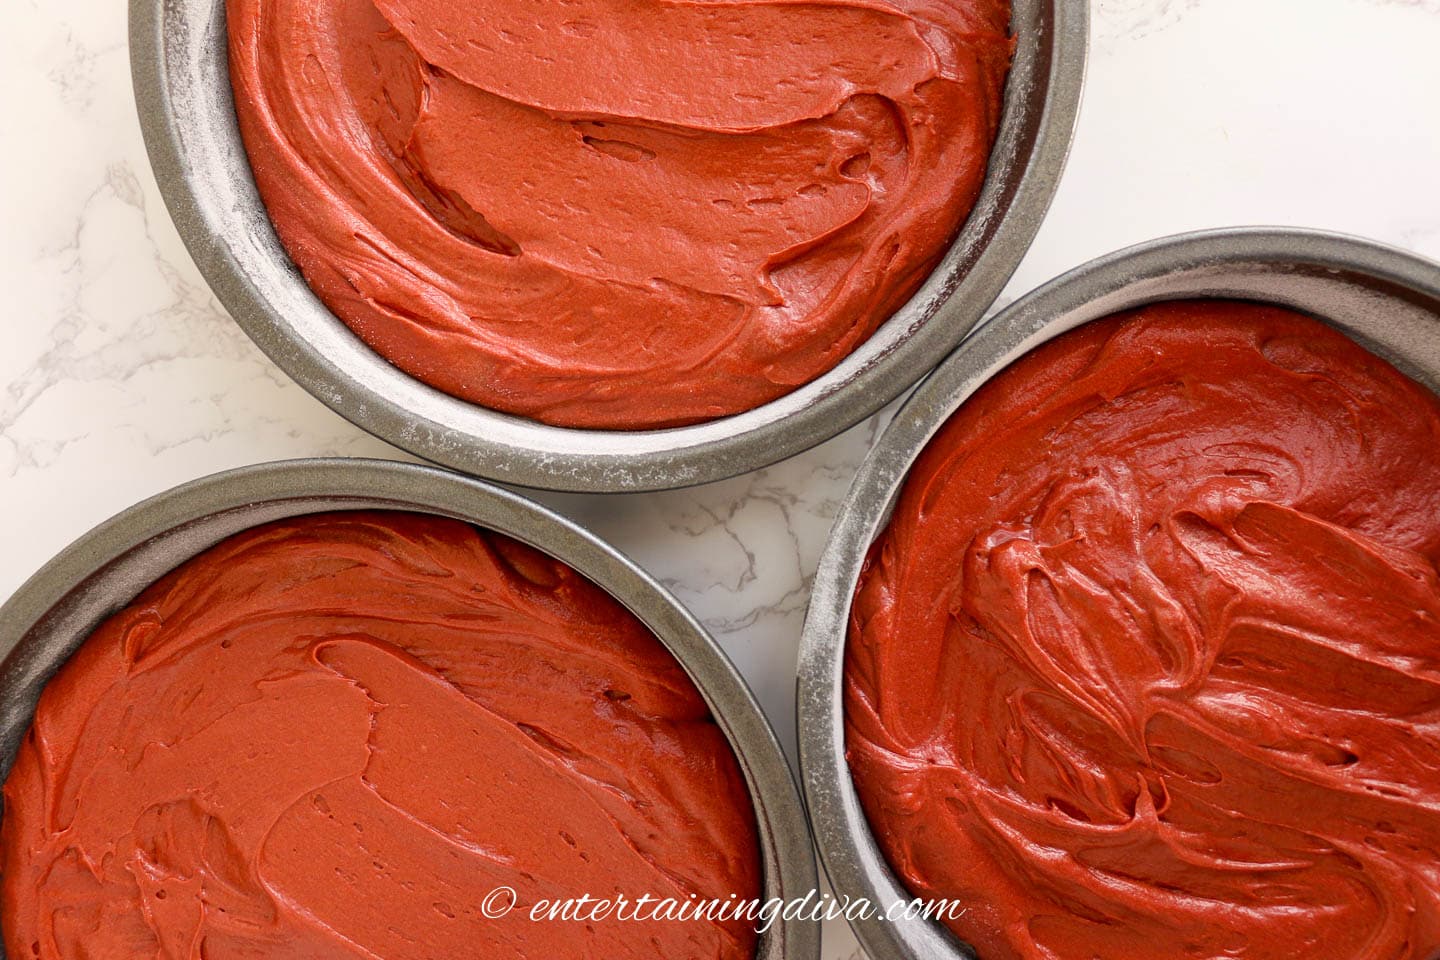 Red velvet cake batter in 3 cake tins